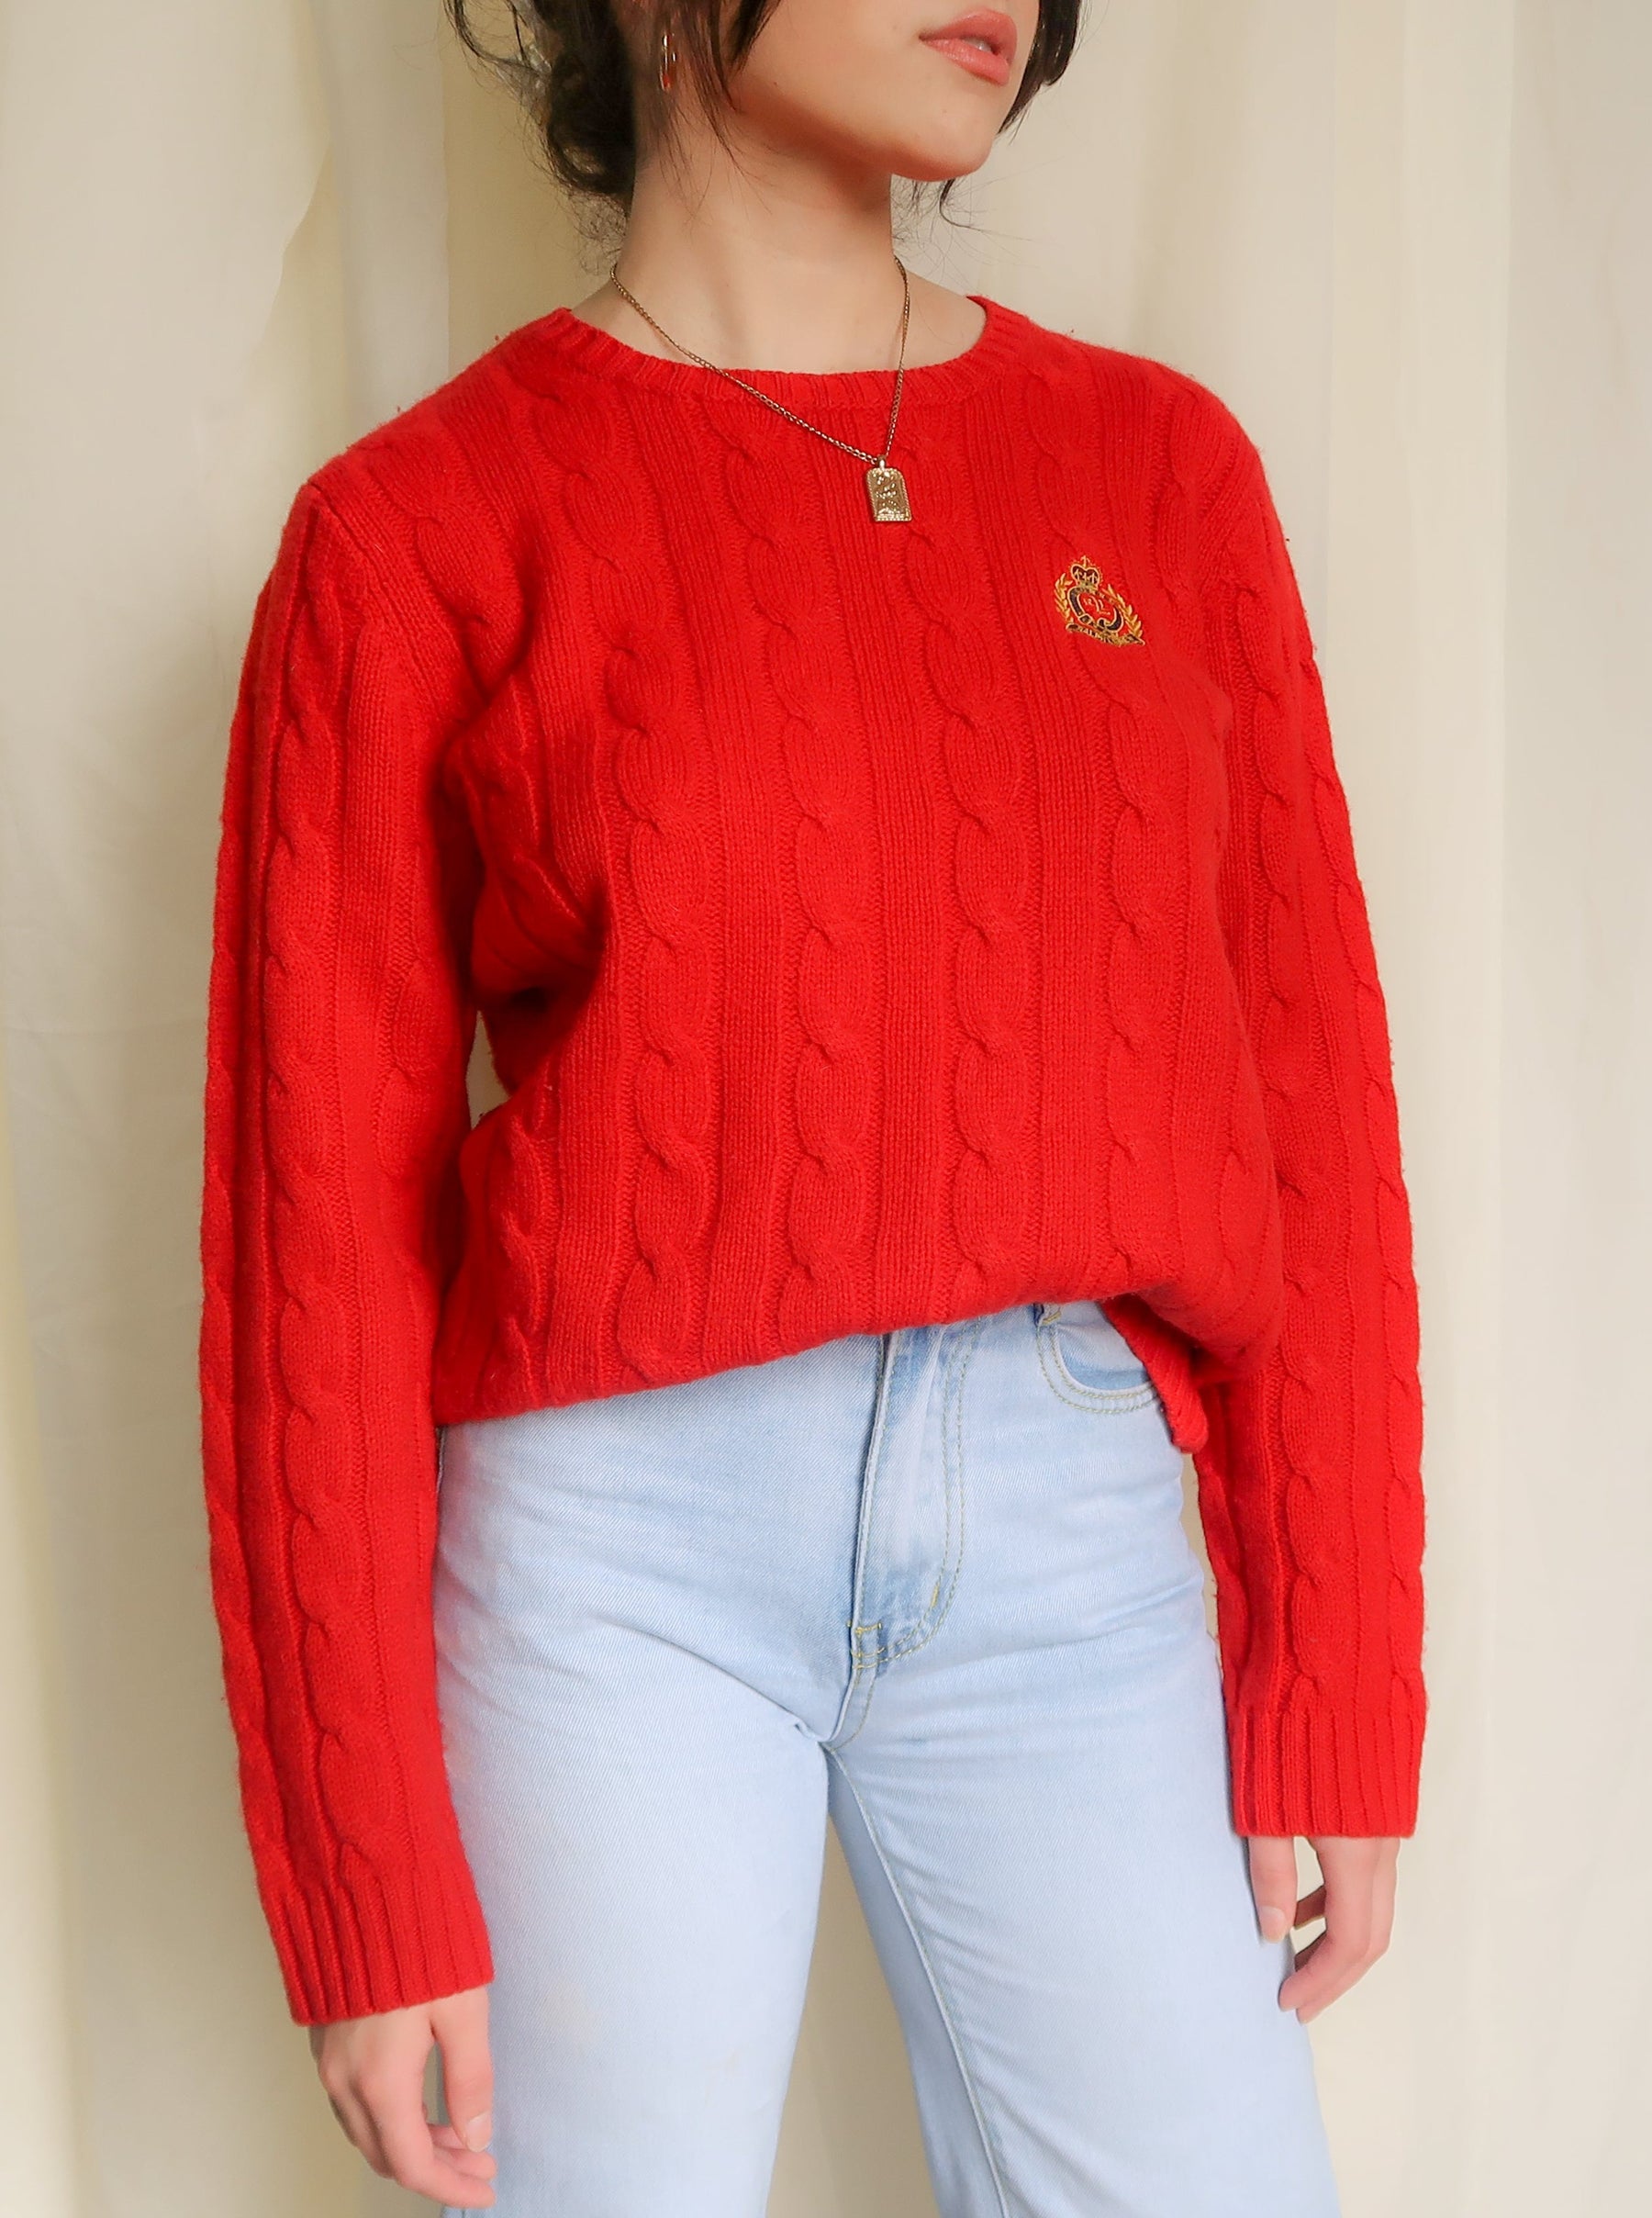 Actualizar 66+ imagen ralph lauren red sweater women’s